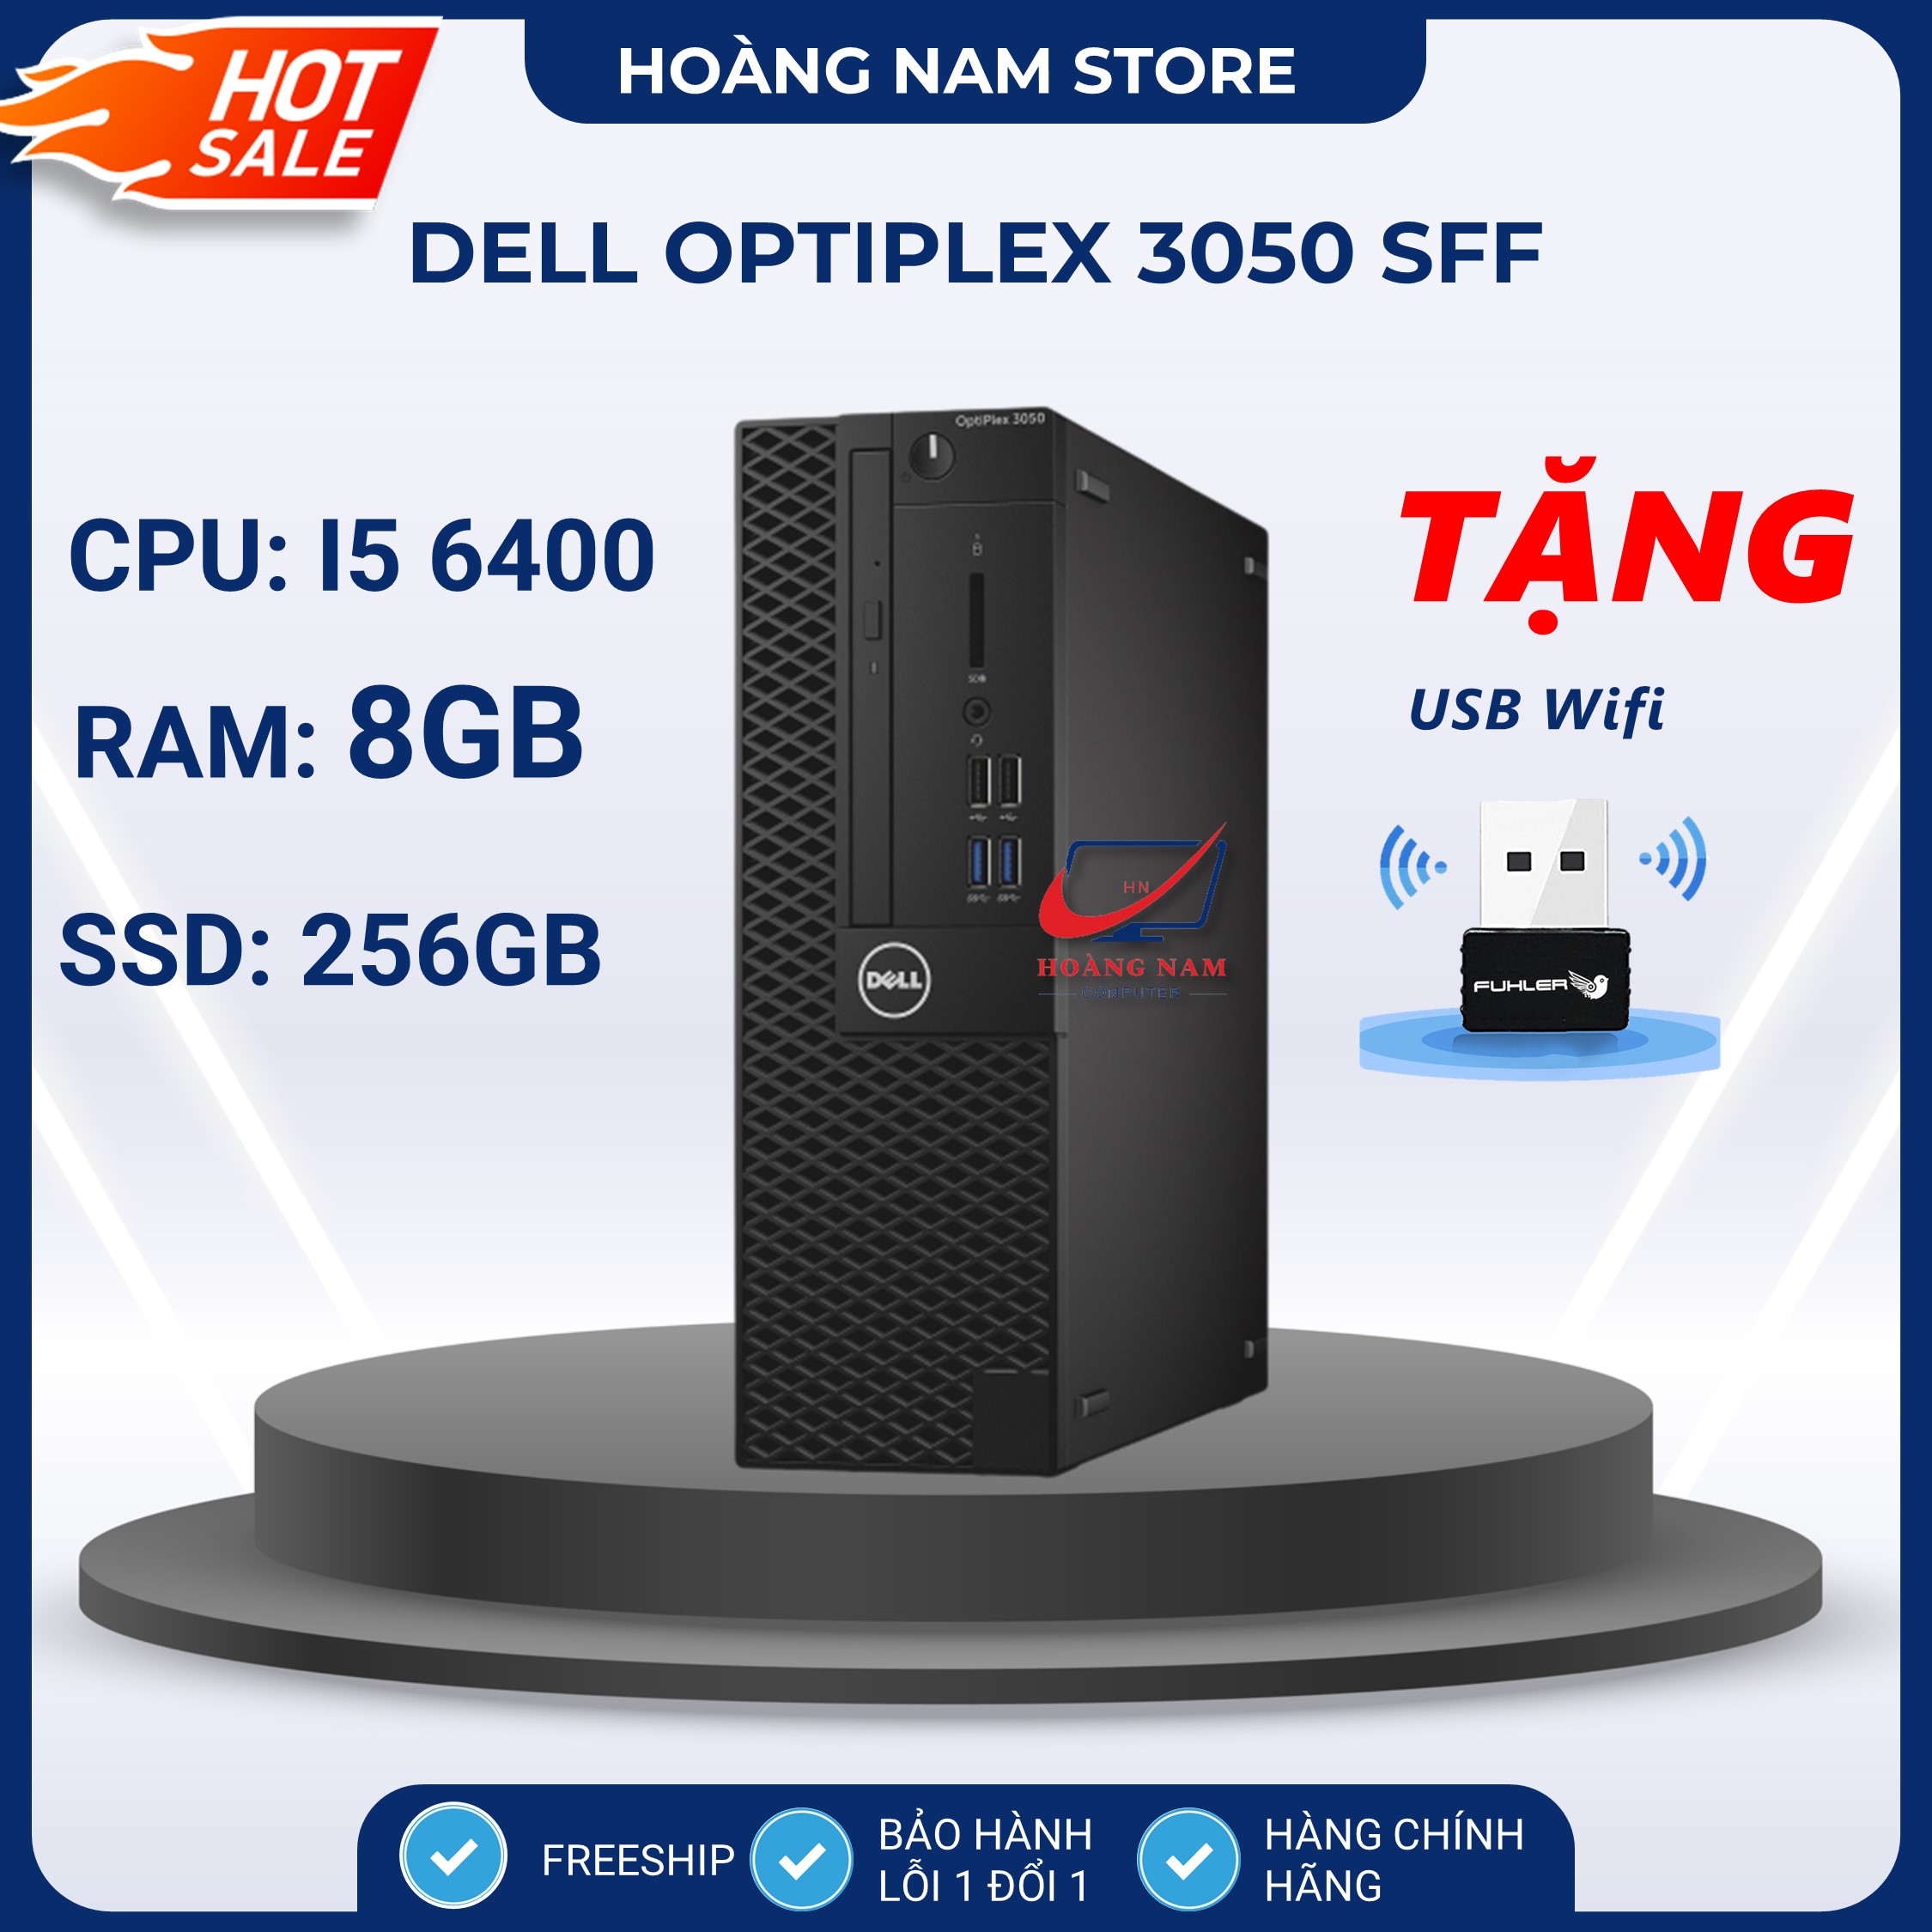 Case máy tính để bàn - PC đồng bộ Dell Optiplex 3050 Core i5 6400 Ram 8GB SSD 256GB, máy văn phòng cấu hình cao siêu bền, bảo hành 12 tháng lỗi 1 đổi 1 thumbnail